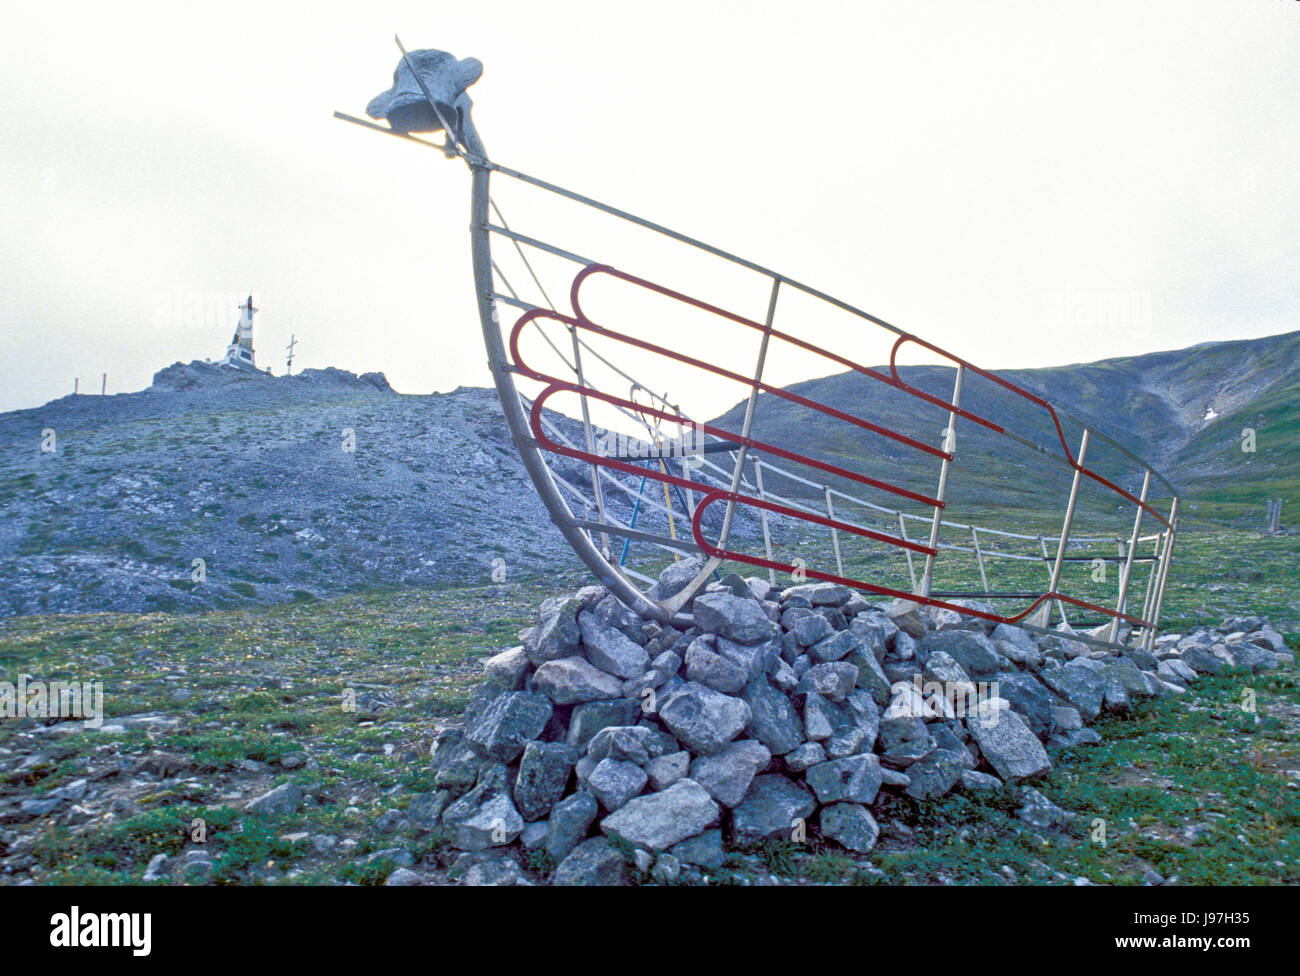 Denkmal für traditionelle Walross Jäger am Kap Dezhnev, russischen Fernen Osten, die am weitesten östlich von Eurasien. Stockfoto